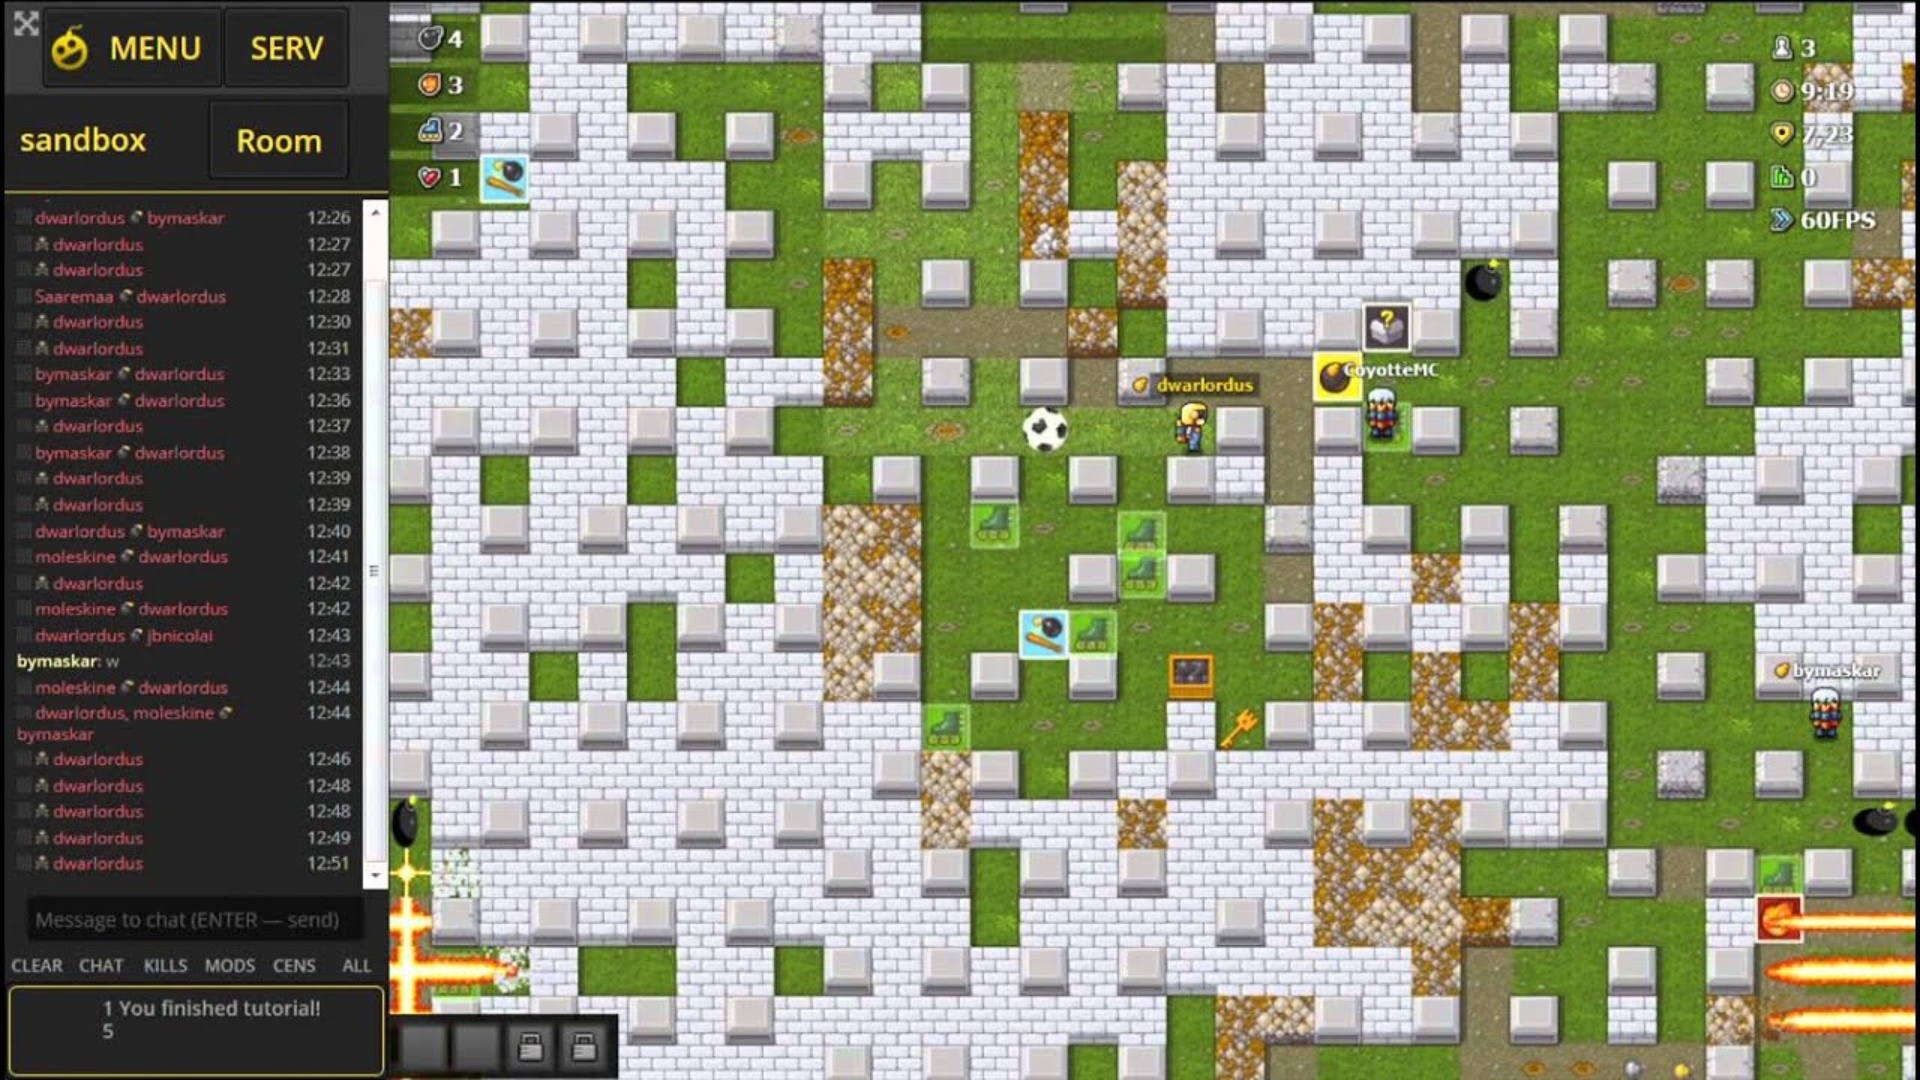 Bedste onlinespil – Et stort felt fra et top-down perspektiv med mange forhindringer og spillerfigurer, der placerer bomber